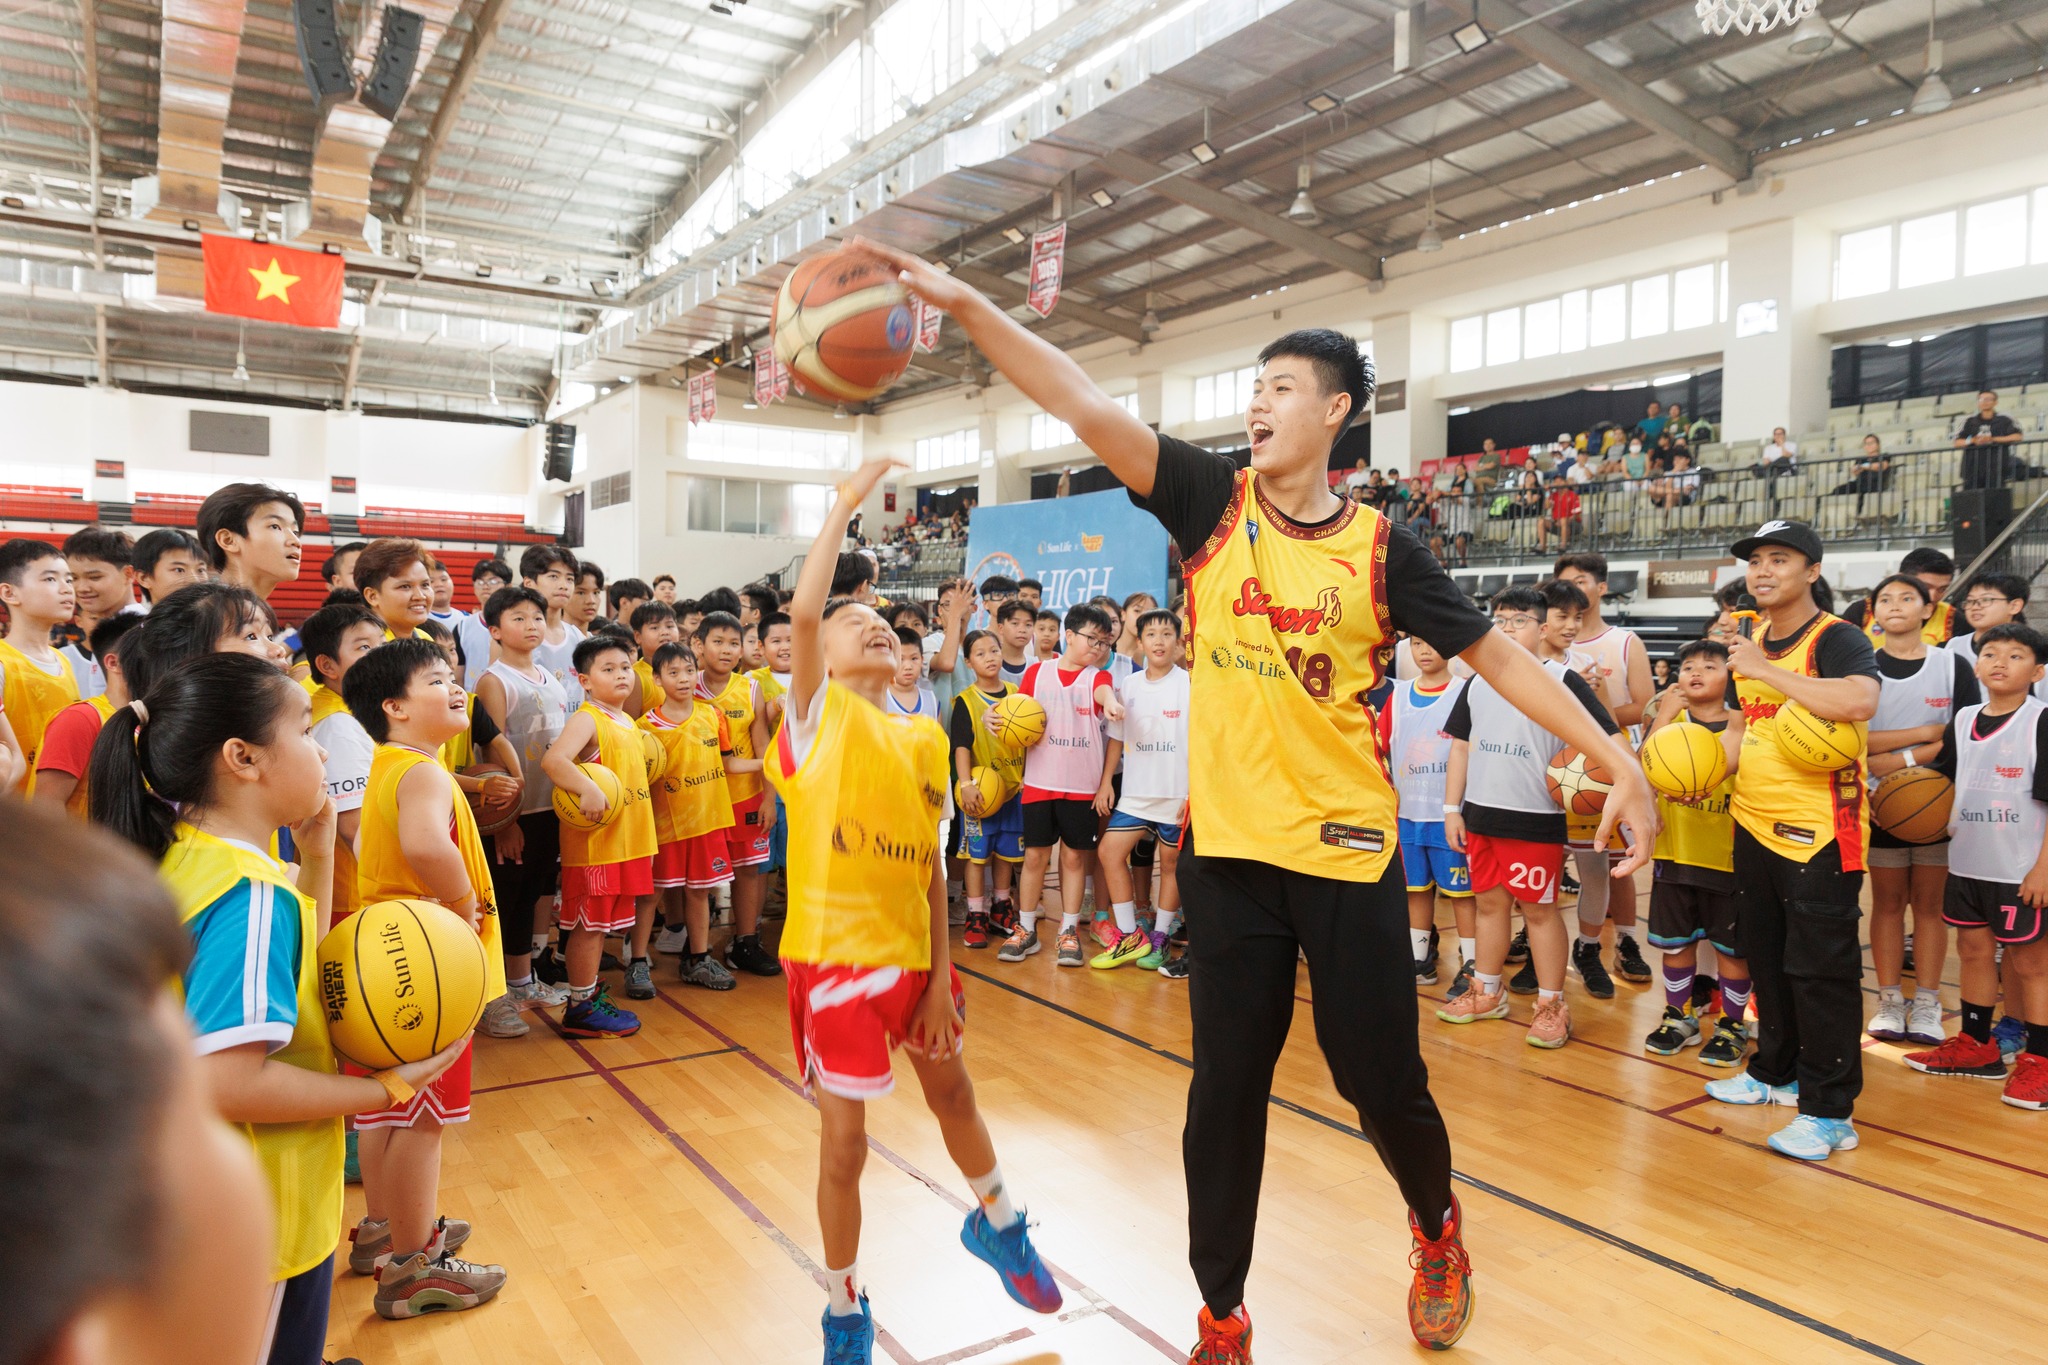 Ngày hội bóng rổ High Hoop dành cho trẻ em từ 8 đến 13 tuổi. Ảnh: Sun Life Việt Nam